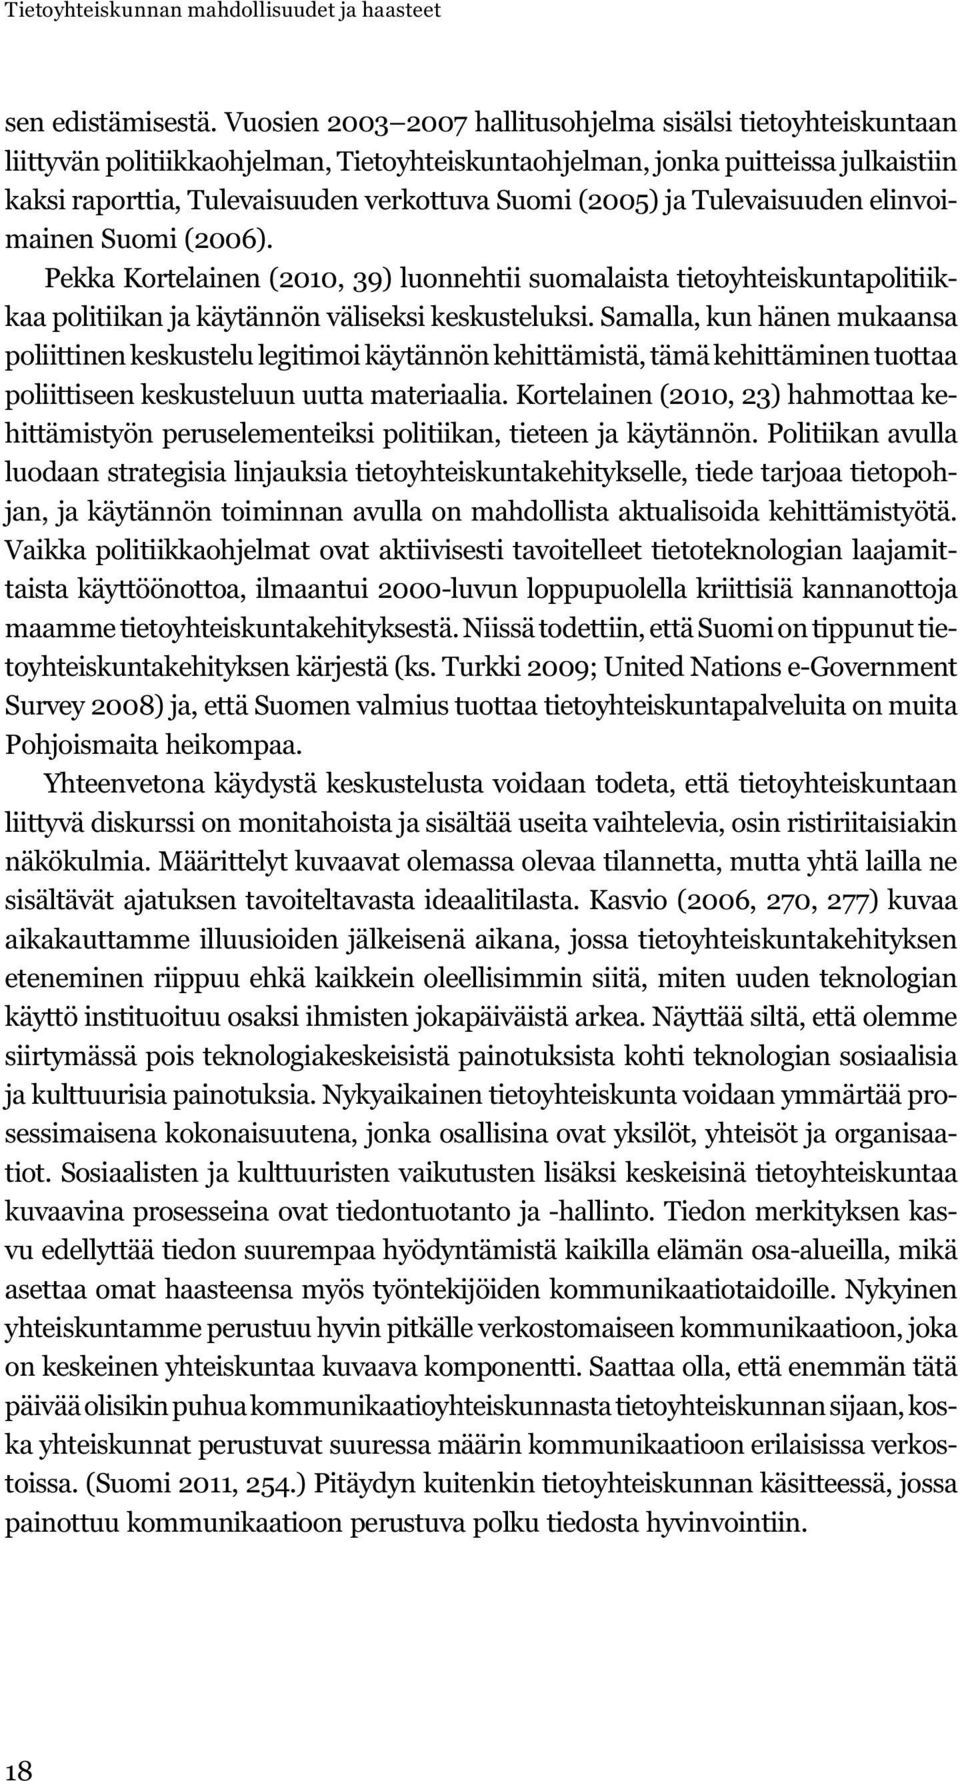 (2005) ja Tulevaisuuden elinvoimainen Suomi (2006). Pekka Kortelainen (2010, 39) luonnehtii suomalaista tietoyhteiskuntapolitiikkaa politiikan ja käytännön väliseksi keskusteluksi.